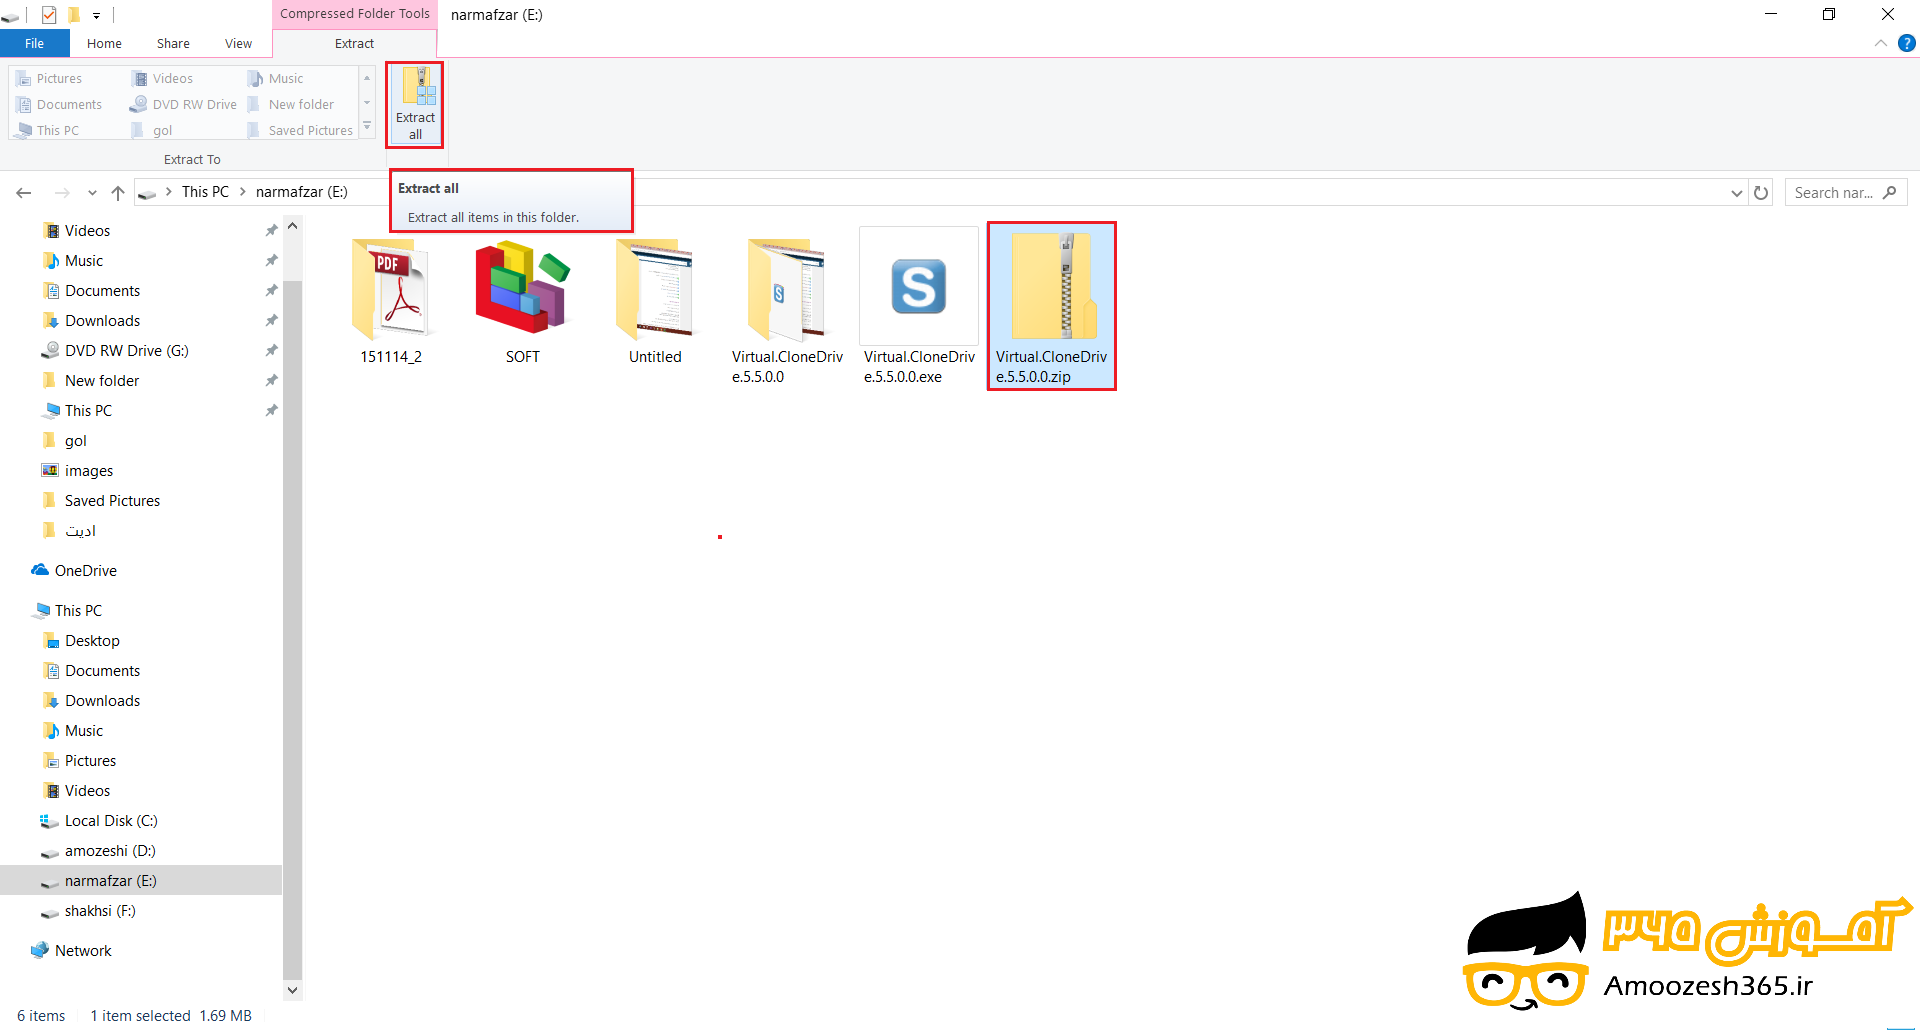 نحوه خارج کردن فایل از حالت فشرده یا نحوه خارج کردن فایل از حالت زیپ (Zip) (Extract compressed folder files) در سیستم عامل ویندوز